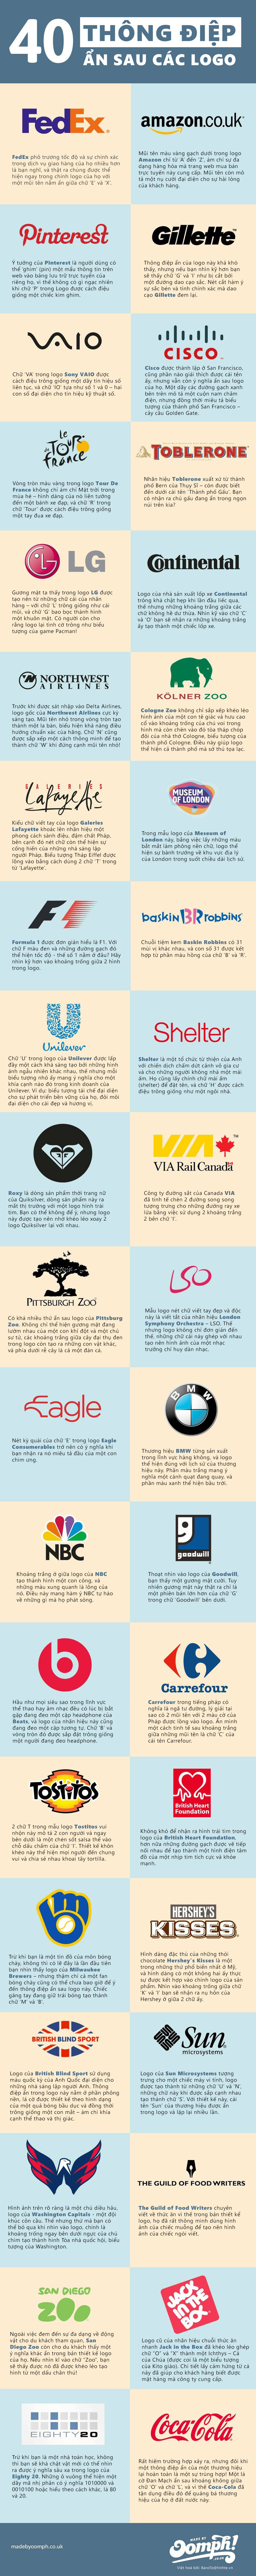 [Infographic] 40 logo ẩn chứa thông điệp doanh nghiệp 7